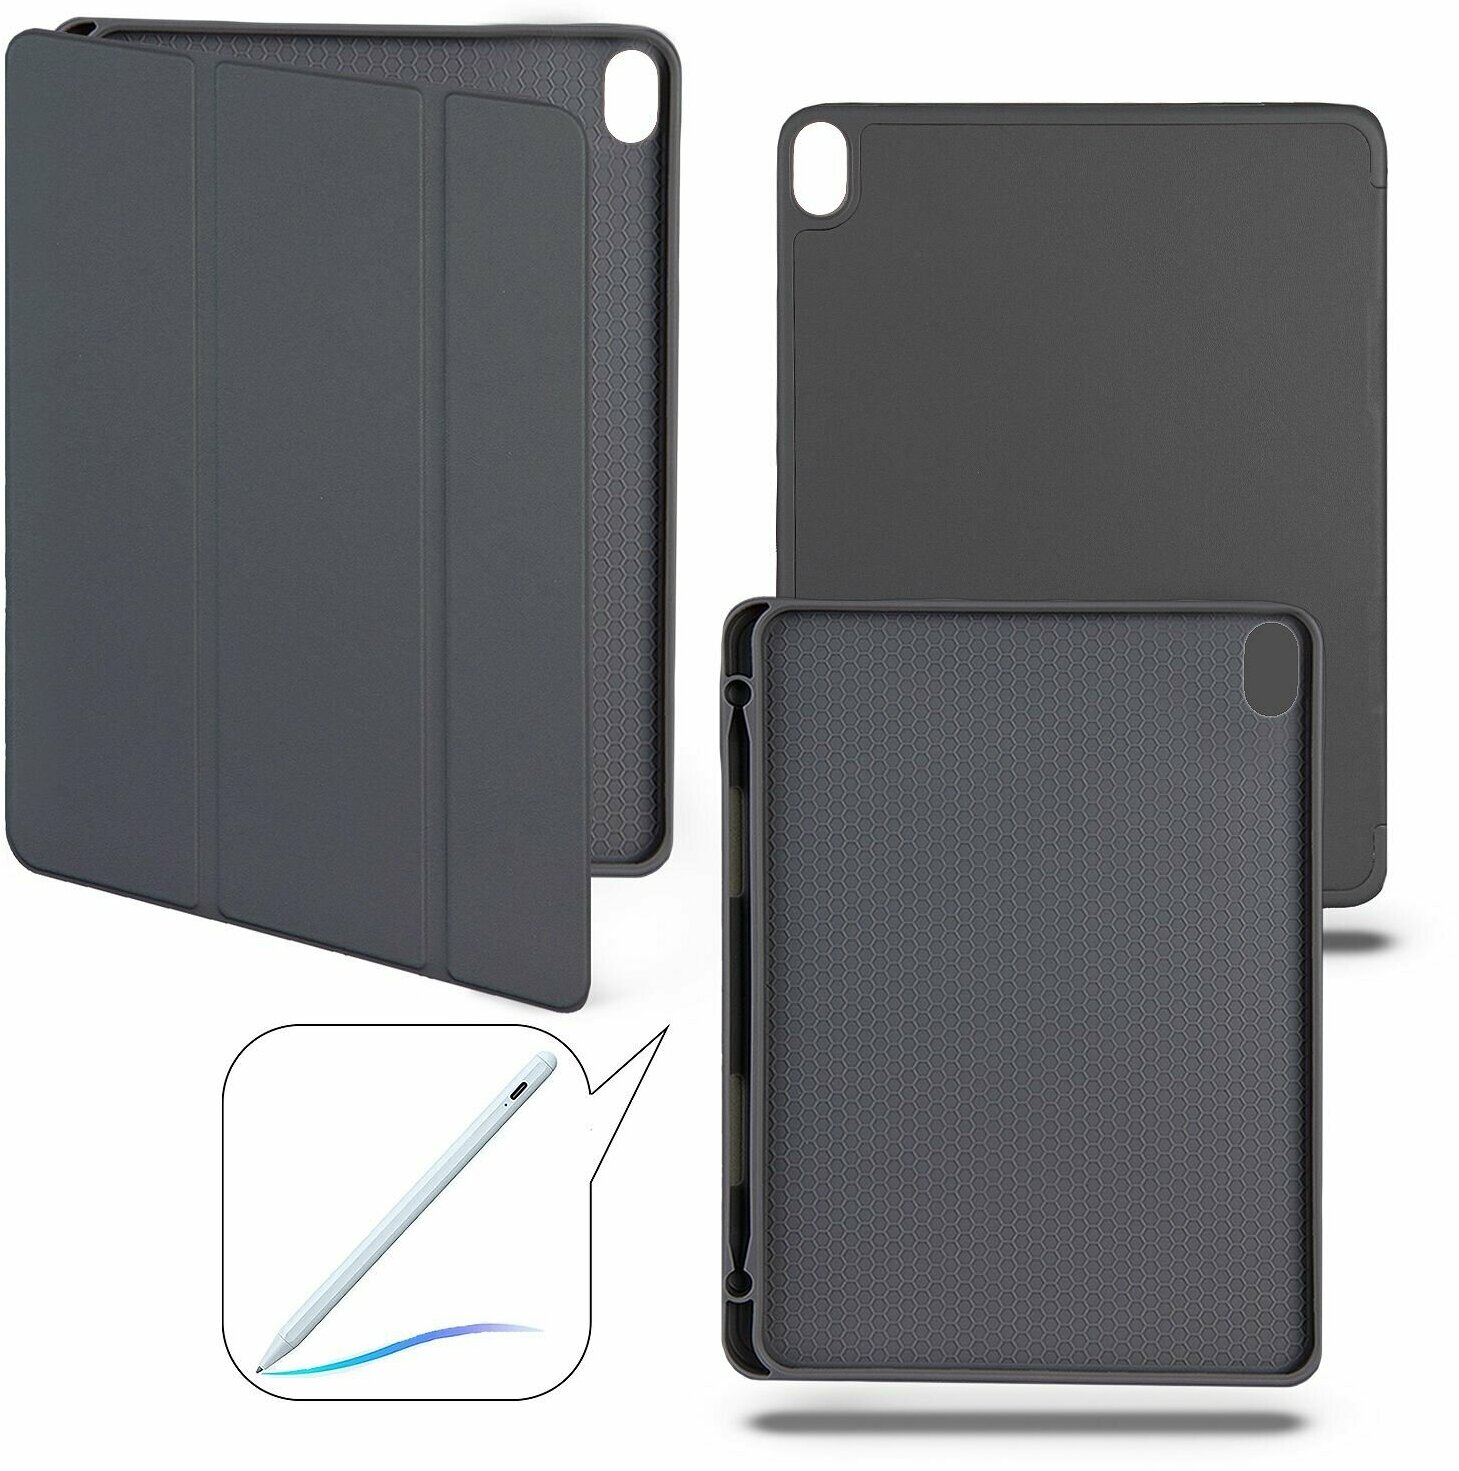 Чехол-книжка для iPad Air 4 (10.9", 2020) / iPad Air 5 (10.9", 2022) с отделением для стилуса, темно-серый